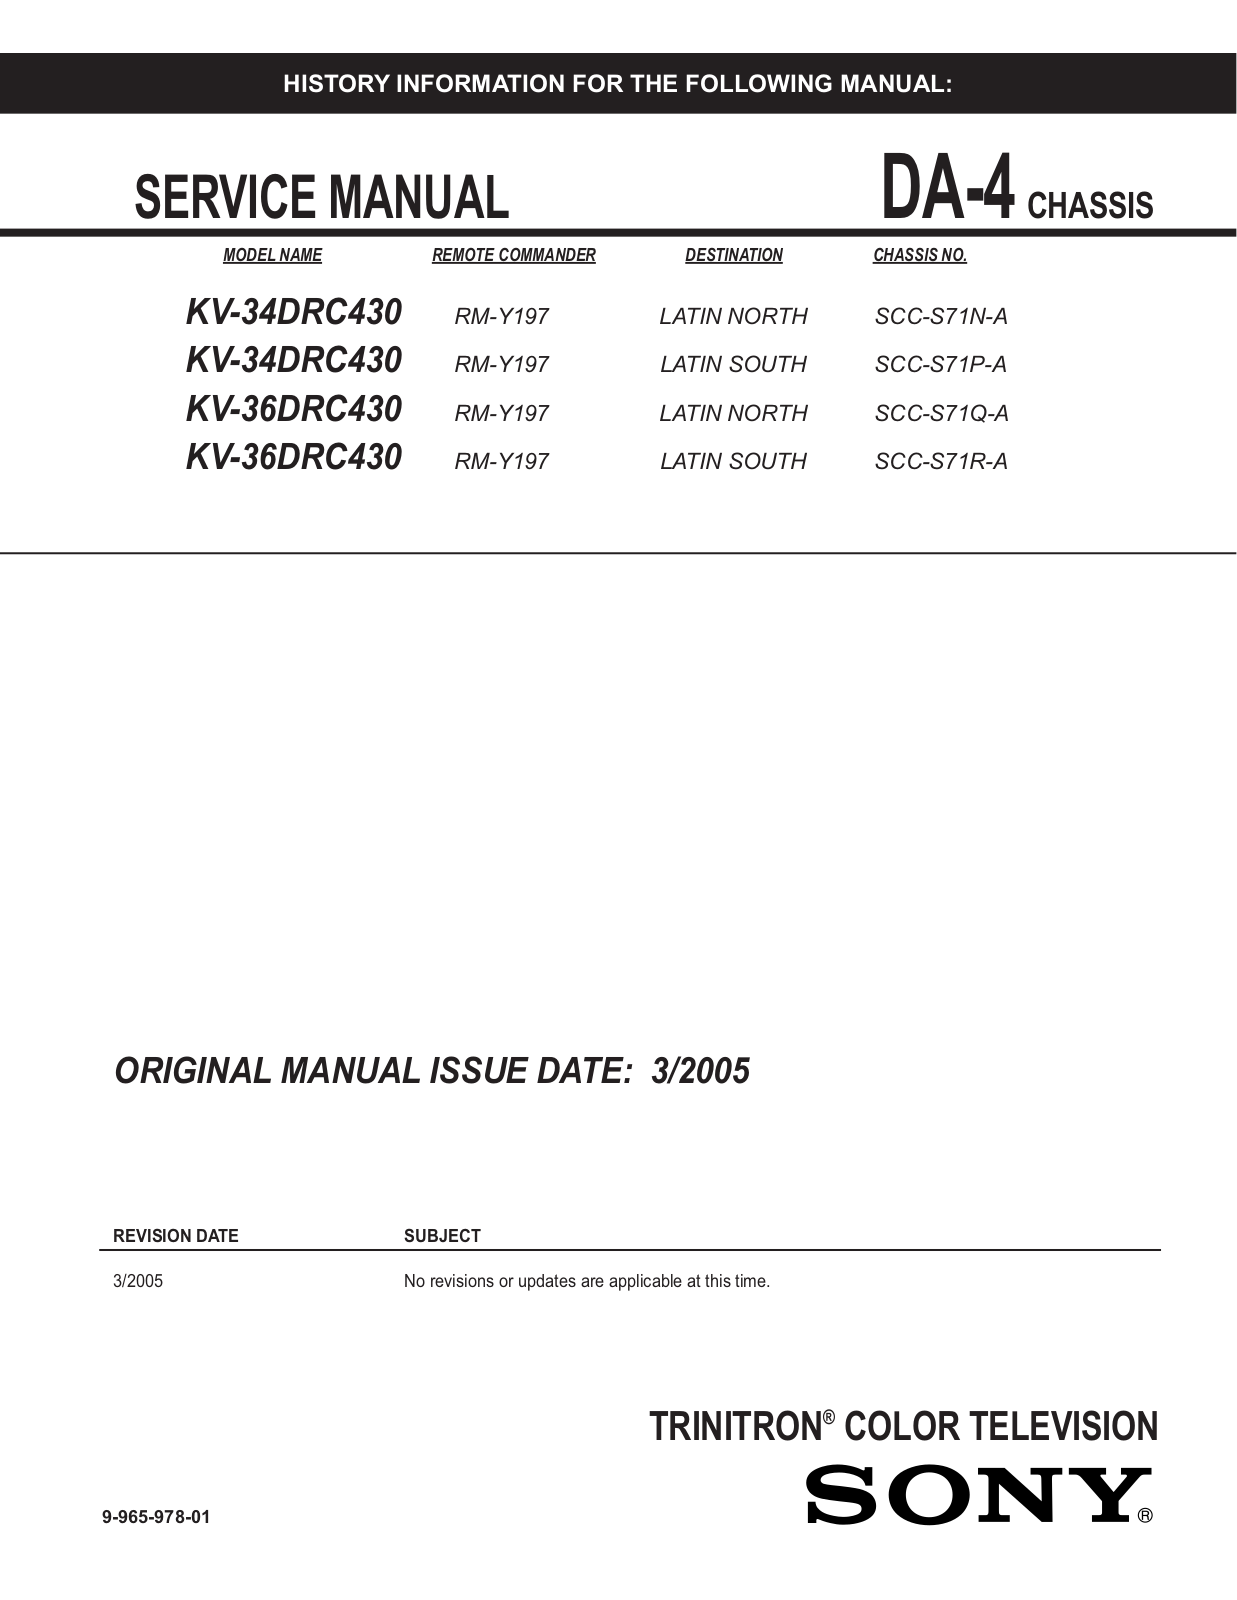 SONY KV-34DRC430, KV-36DRC430 Service Manual